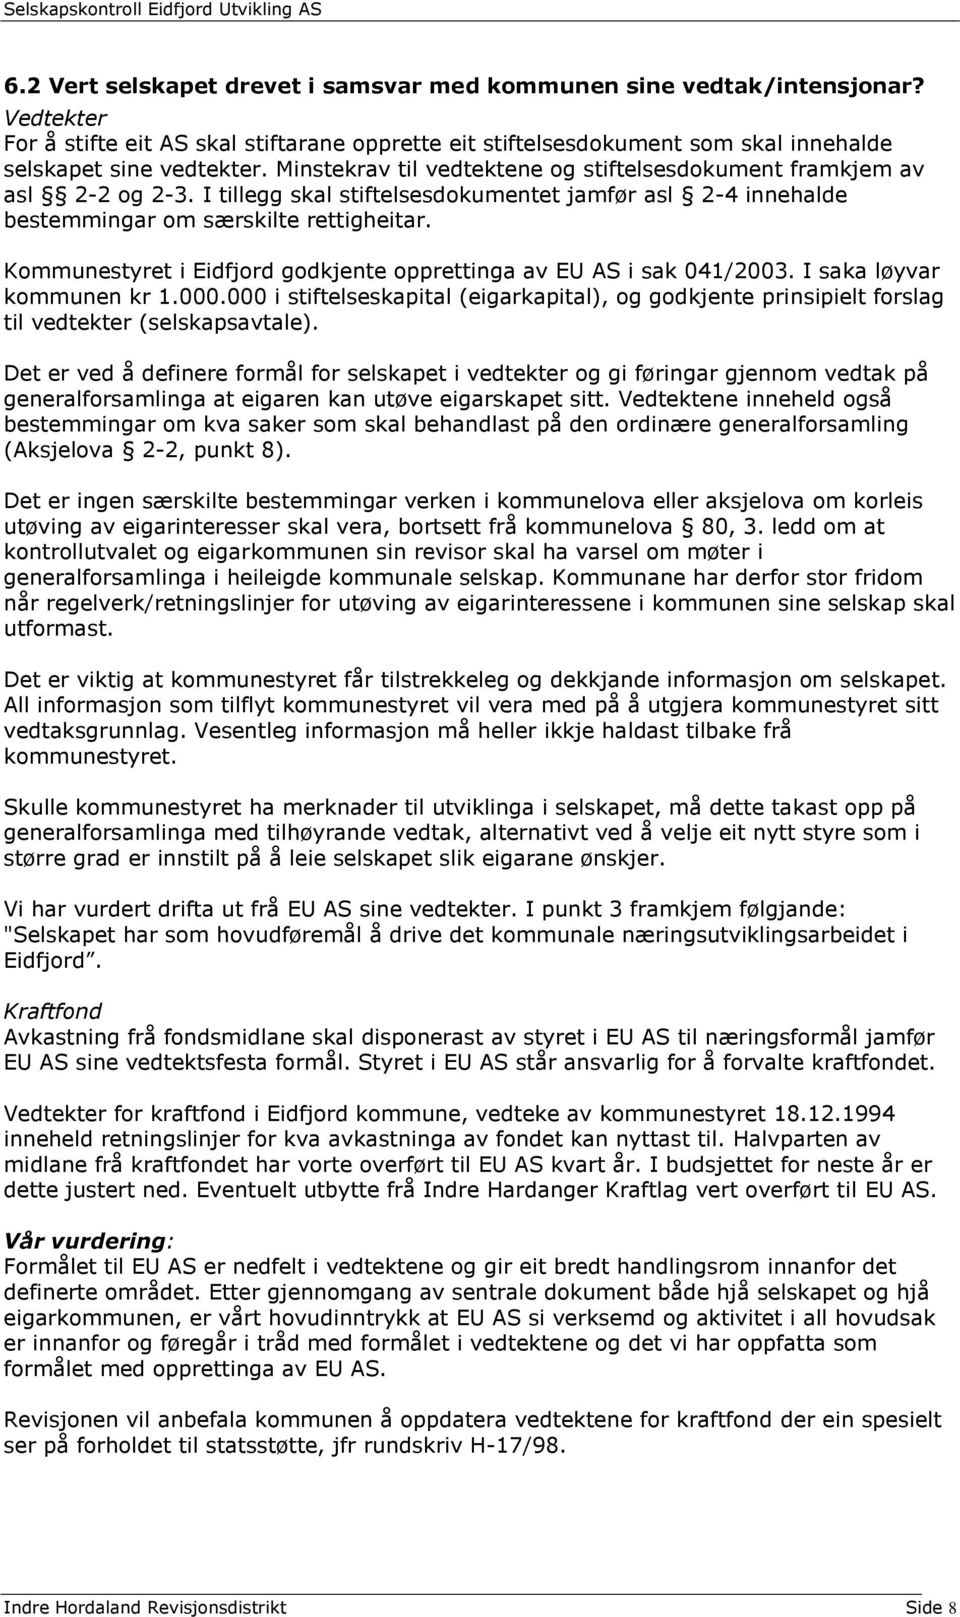 Kommunestyret i Eidfjord godkjente opprettinga av EU AS i sak 041/2003. I saka løyvar kommunen kr 1.000.